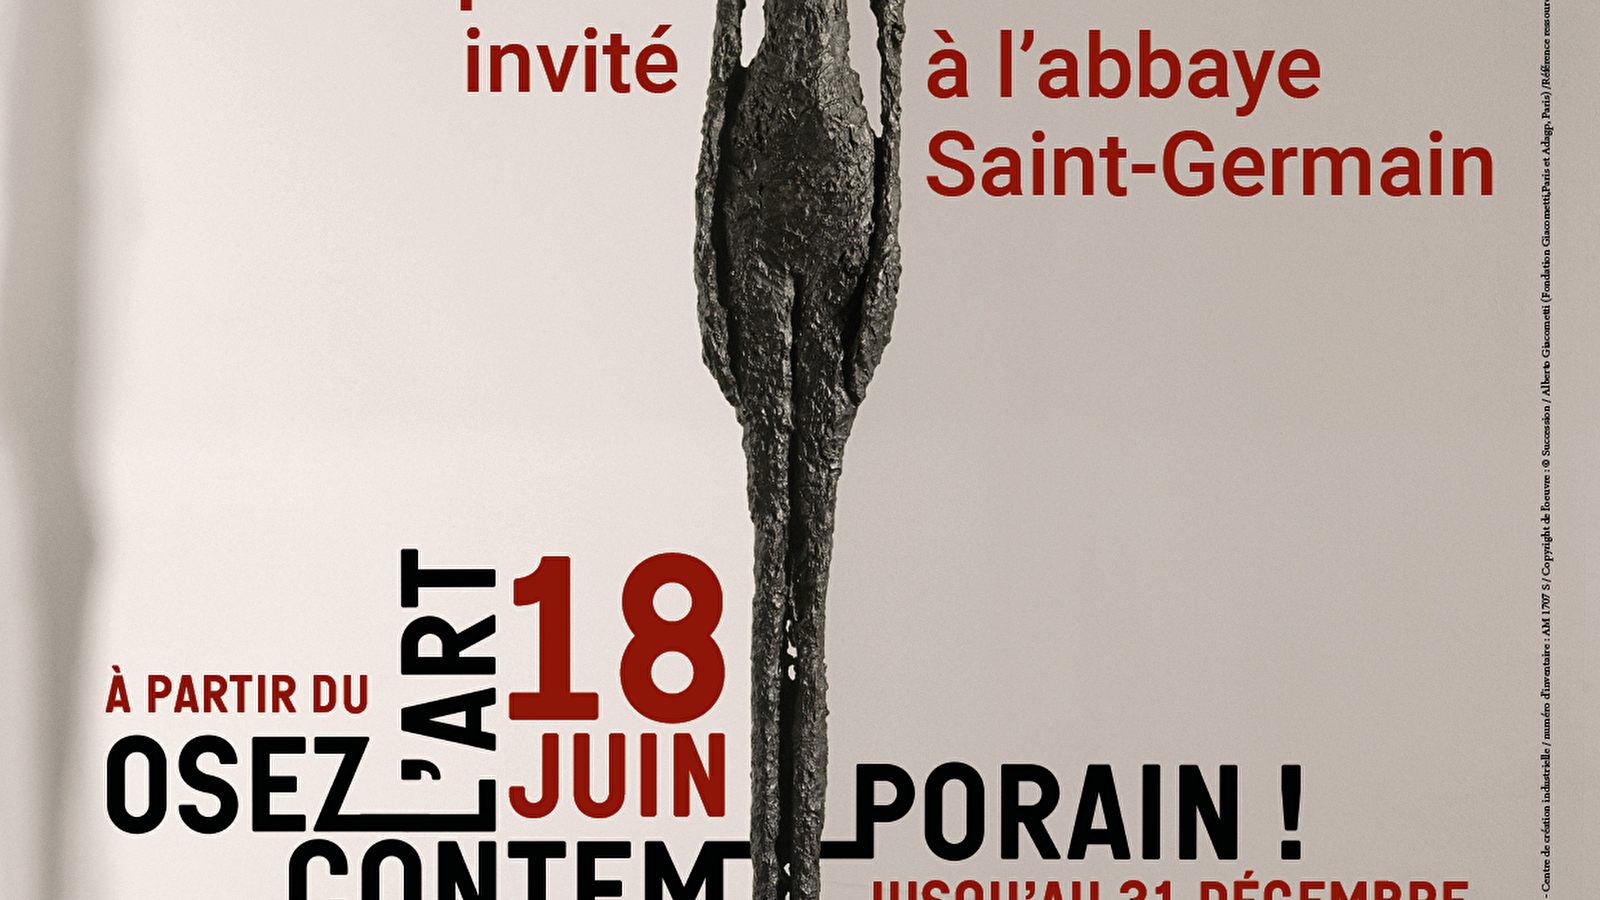 Le Centre Pompidou invité à l’Abbaye Saint-Germain 